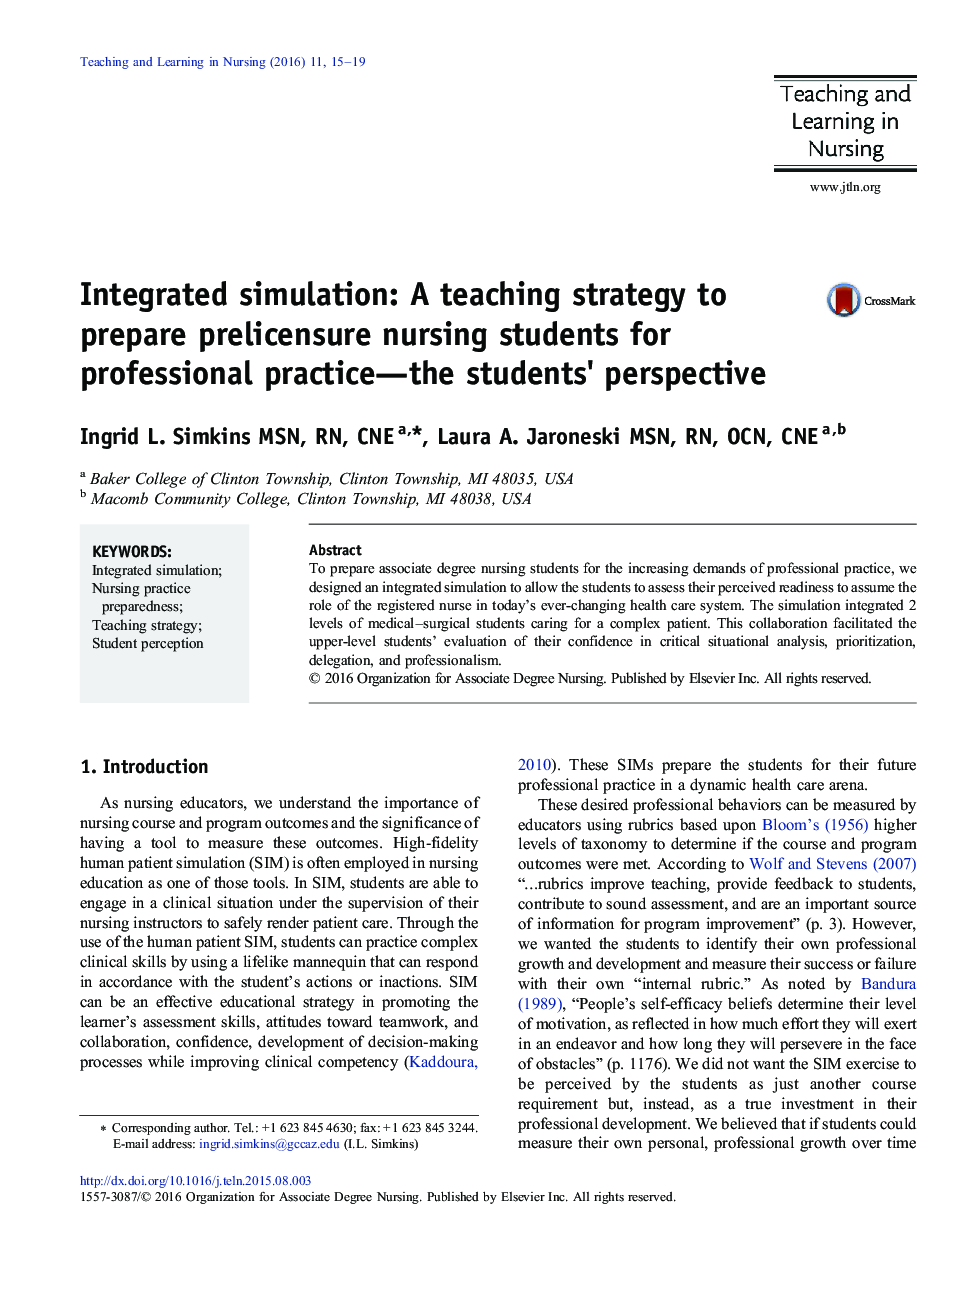 شبیه سازی یکپارچه: یک استراتژی آموزش برای آماده سازی دانشجویان پرستاری قبل از اخذ مجوز برای چشم انداز حرفه ای عمل دانش آموزان